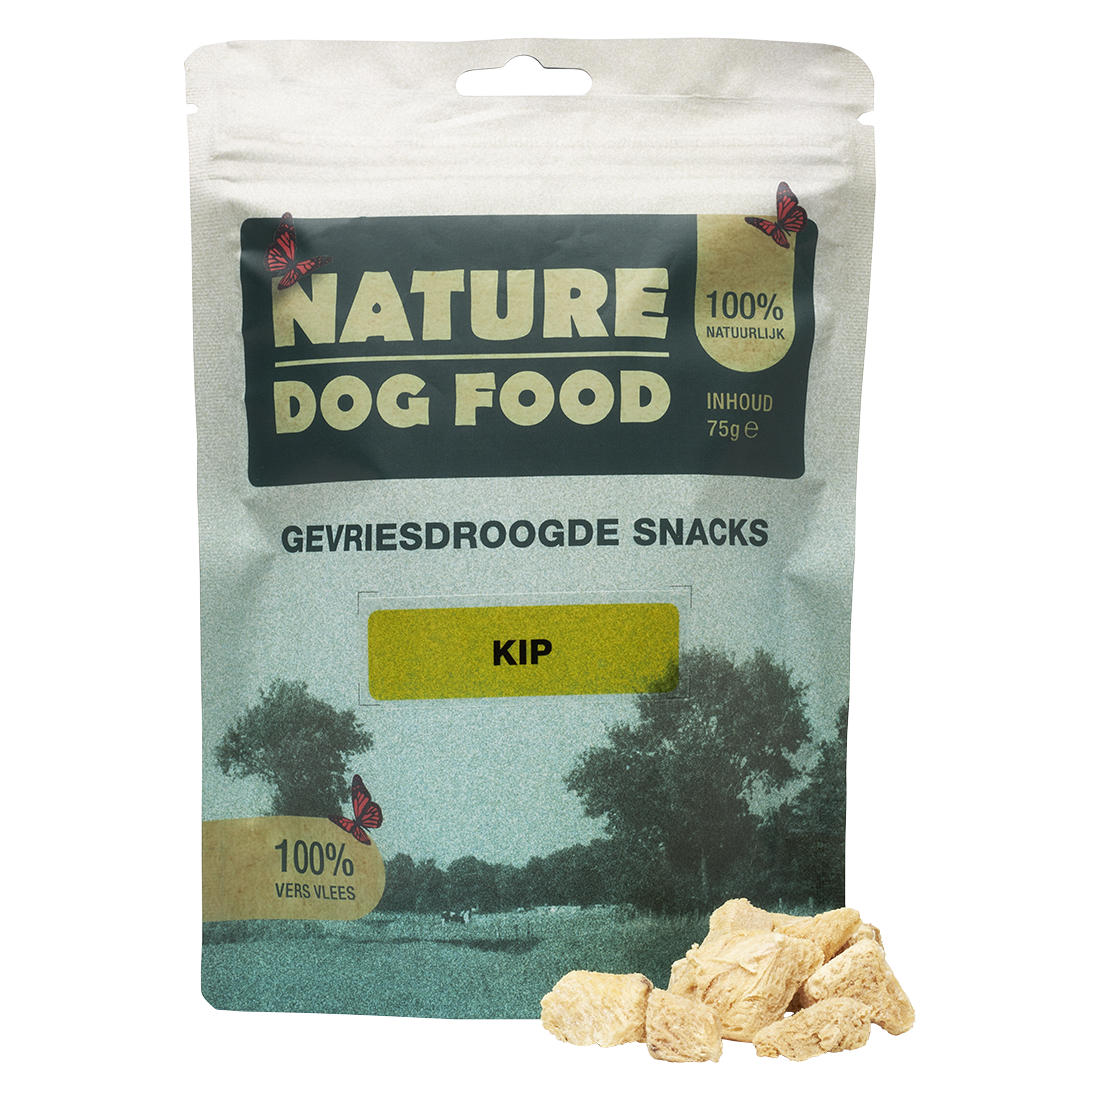 Gevriesdroogde snacks voor honden van Kip